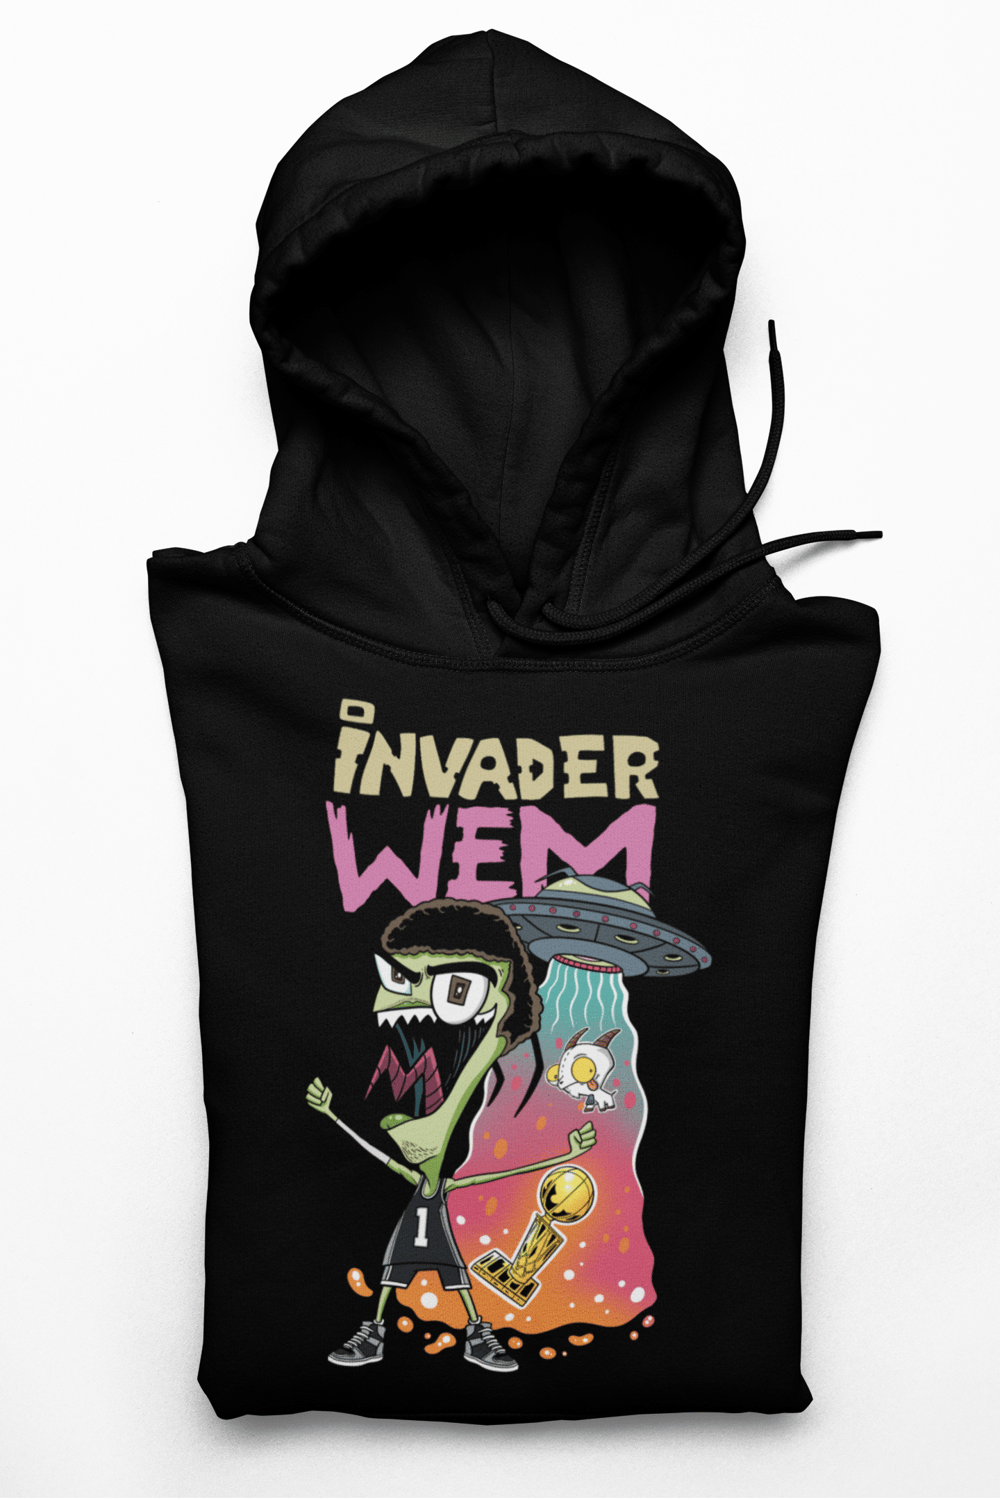 Invader Wem (Hoodie)